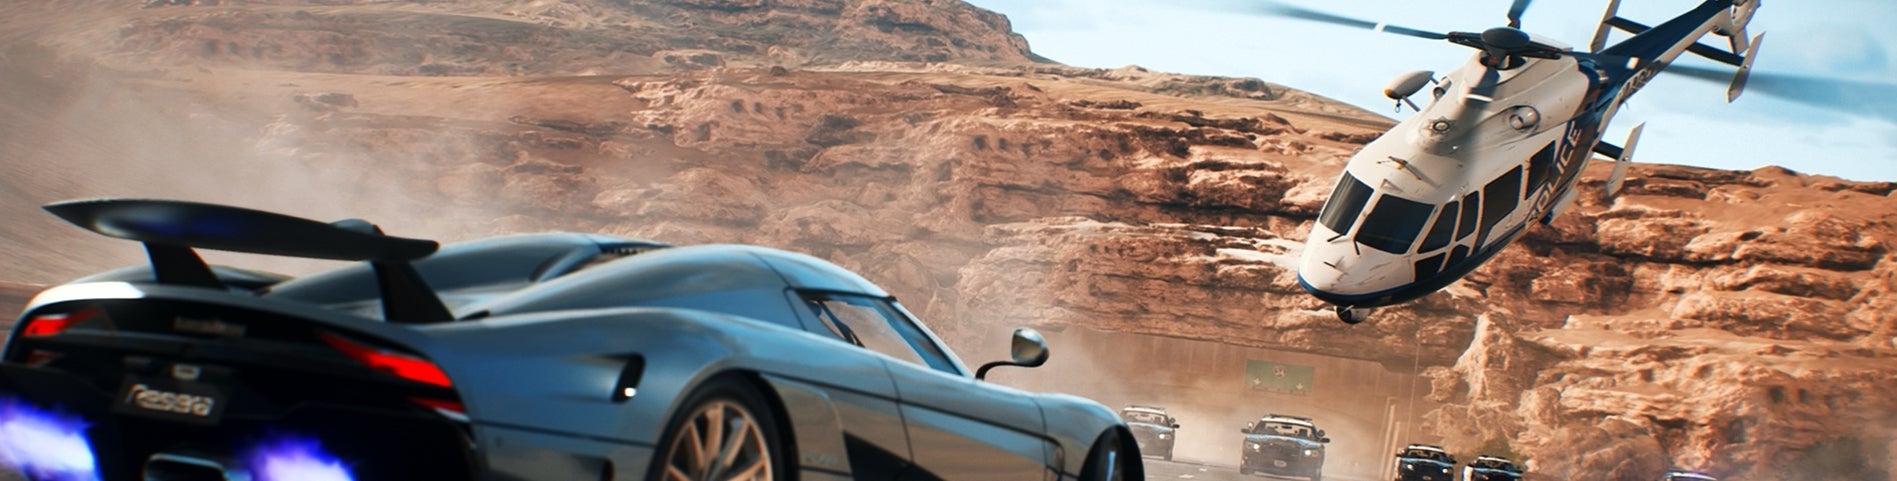 Afbeeldingen van Need for Speed Payback review - Met een klapband langs de weg